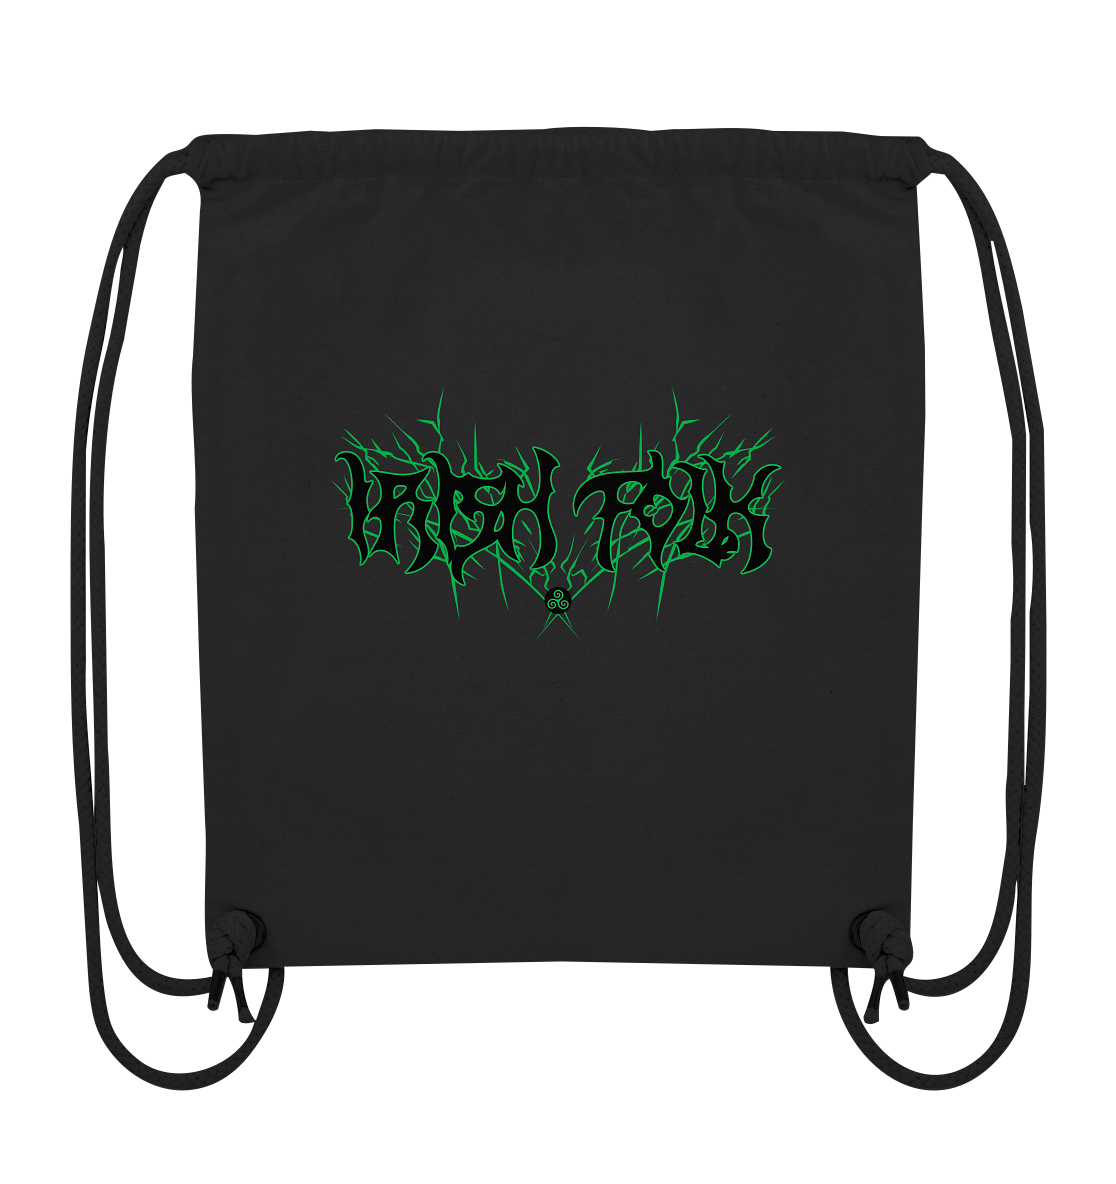 Irish Folk "Metal Band" - Organic Gym-Bag